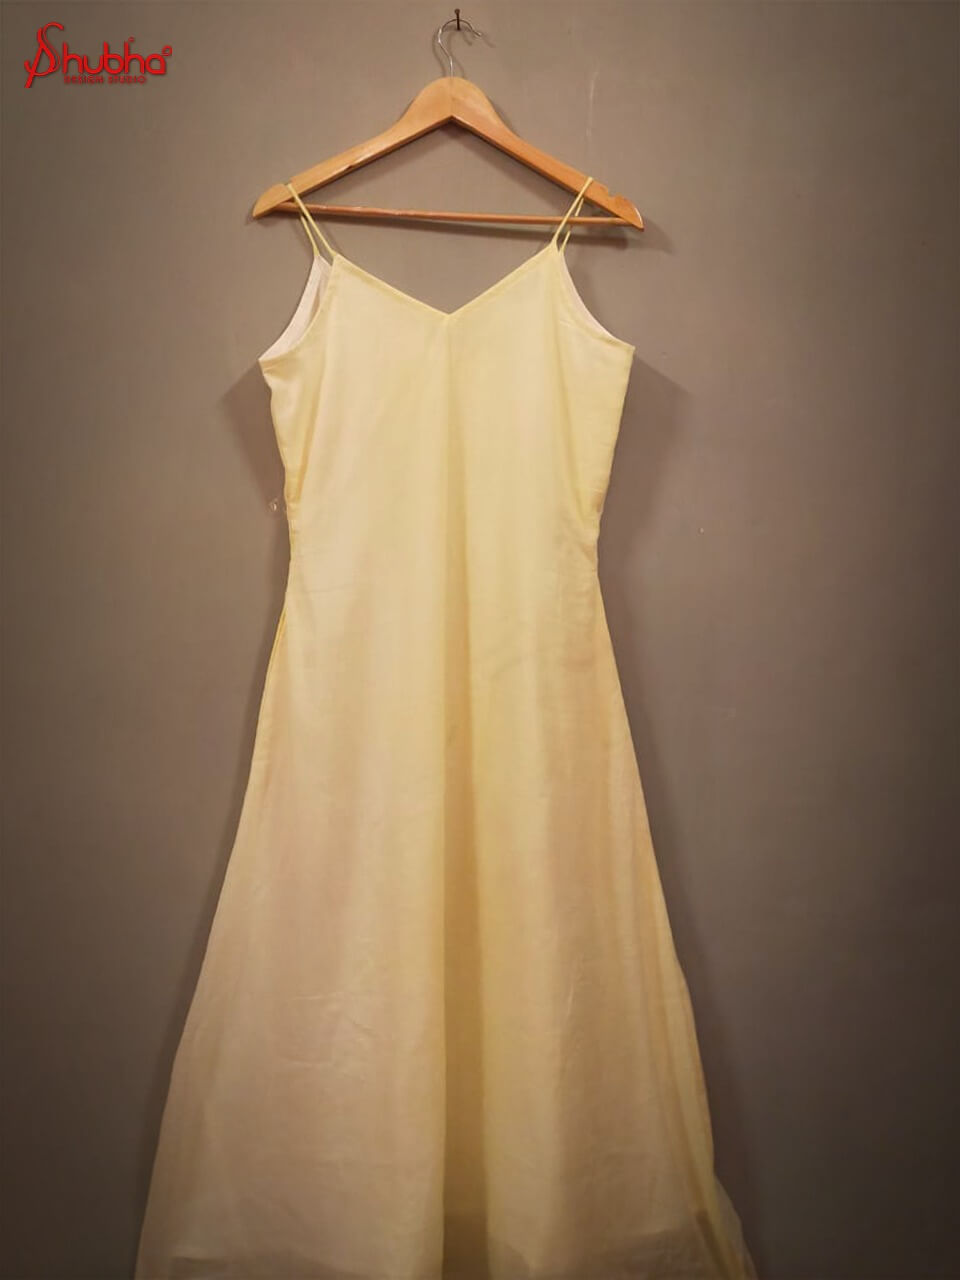 Organic cotton mul light lemon yellow long dress